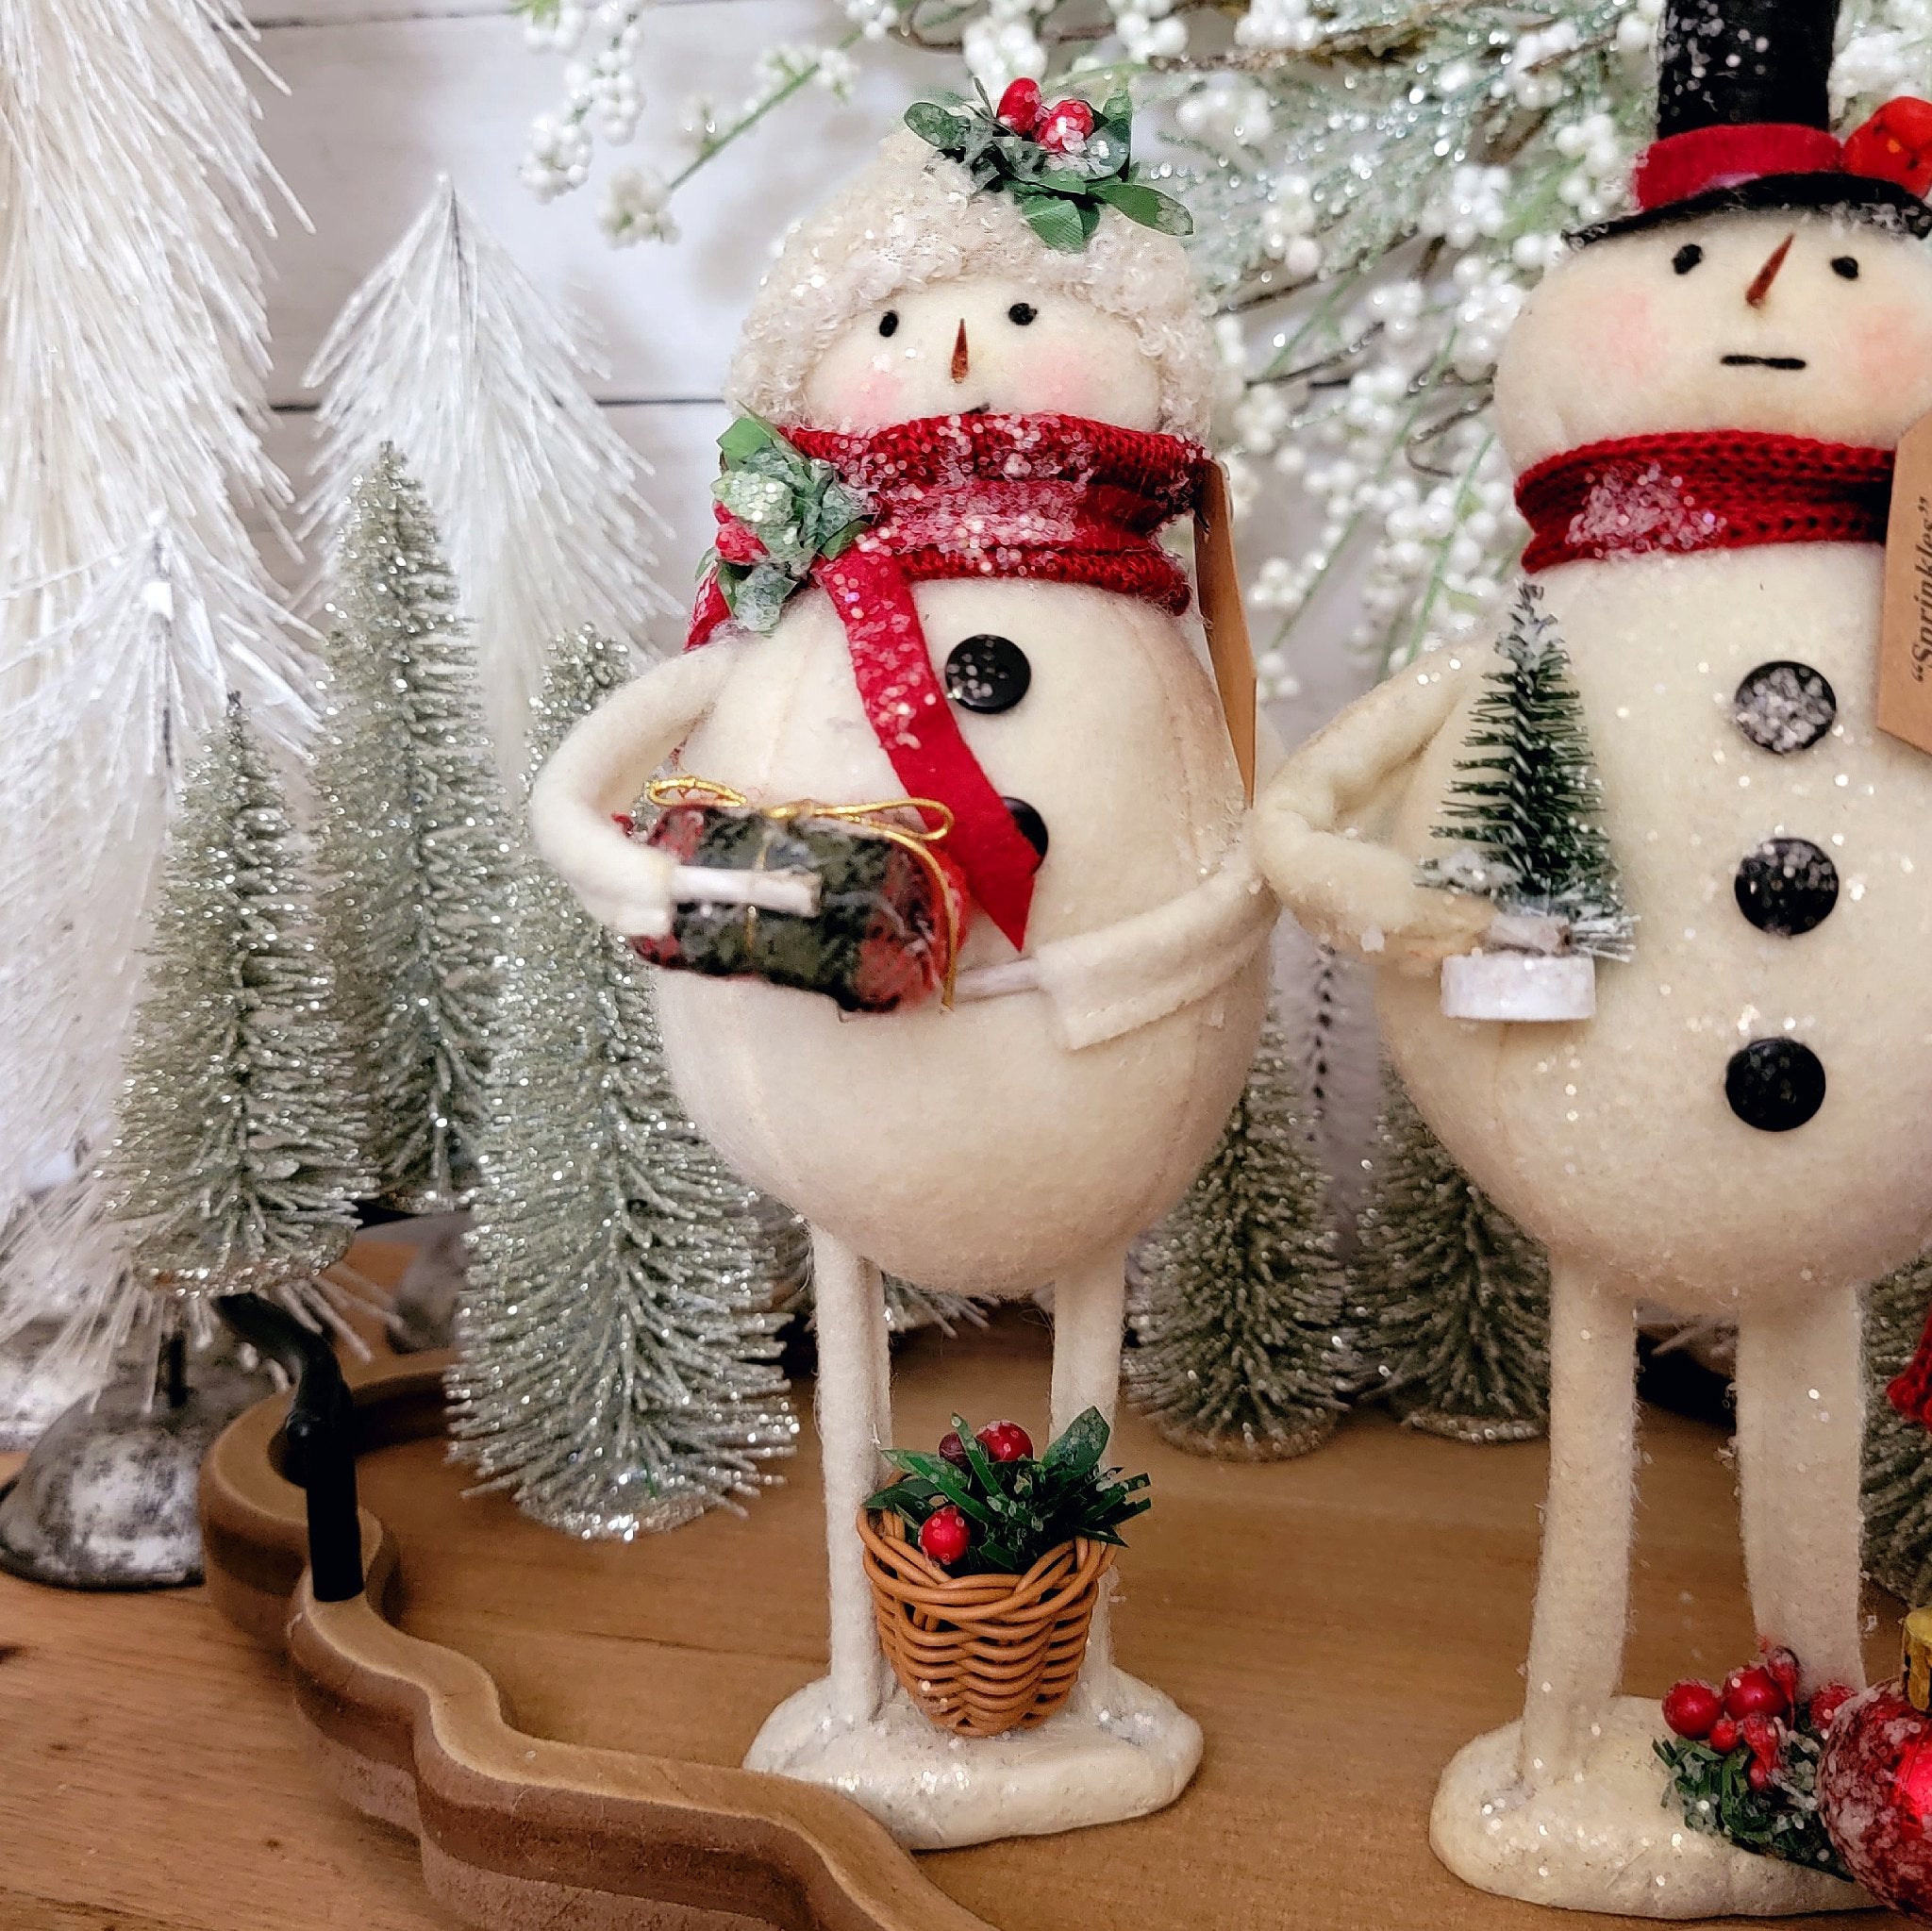 Let it Snow Snowman ornament - Christmas decor - Ornament- tiered tray  decor - Snowman Decor